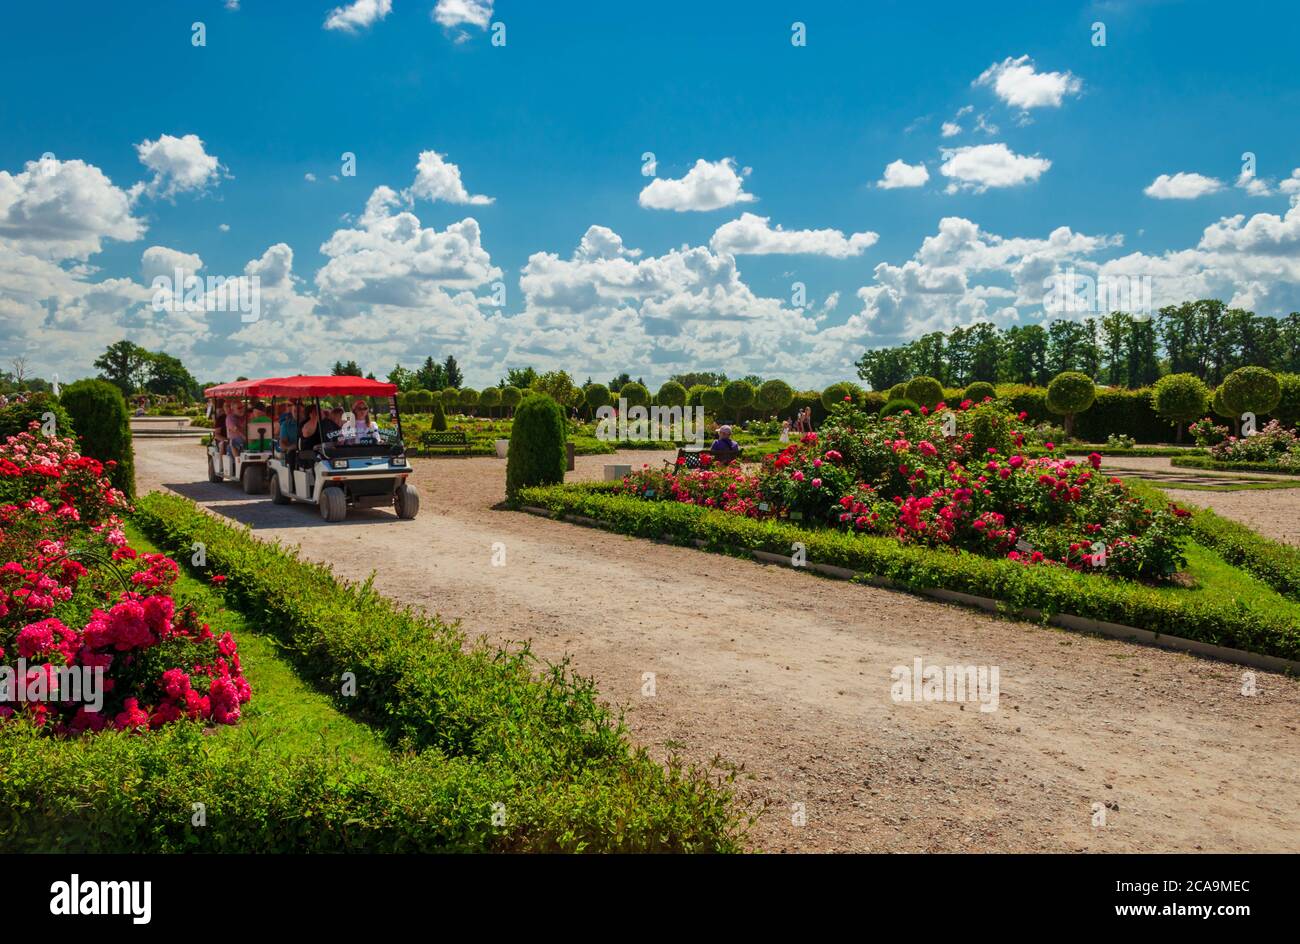 Touristes à cheval Rundale Palace Park bus électrique tour entre les lits de roses. Banque D'Images